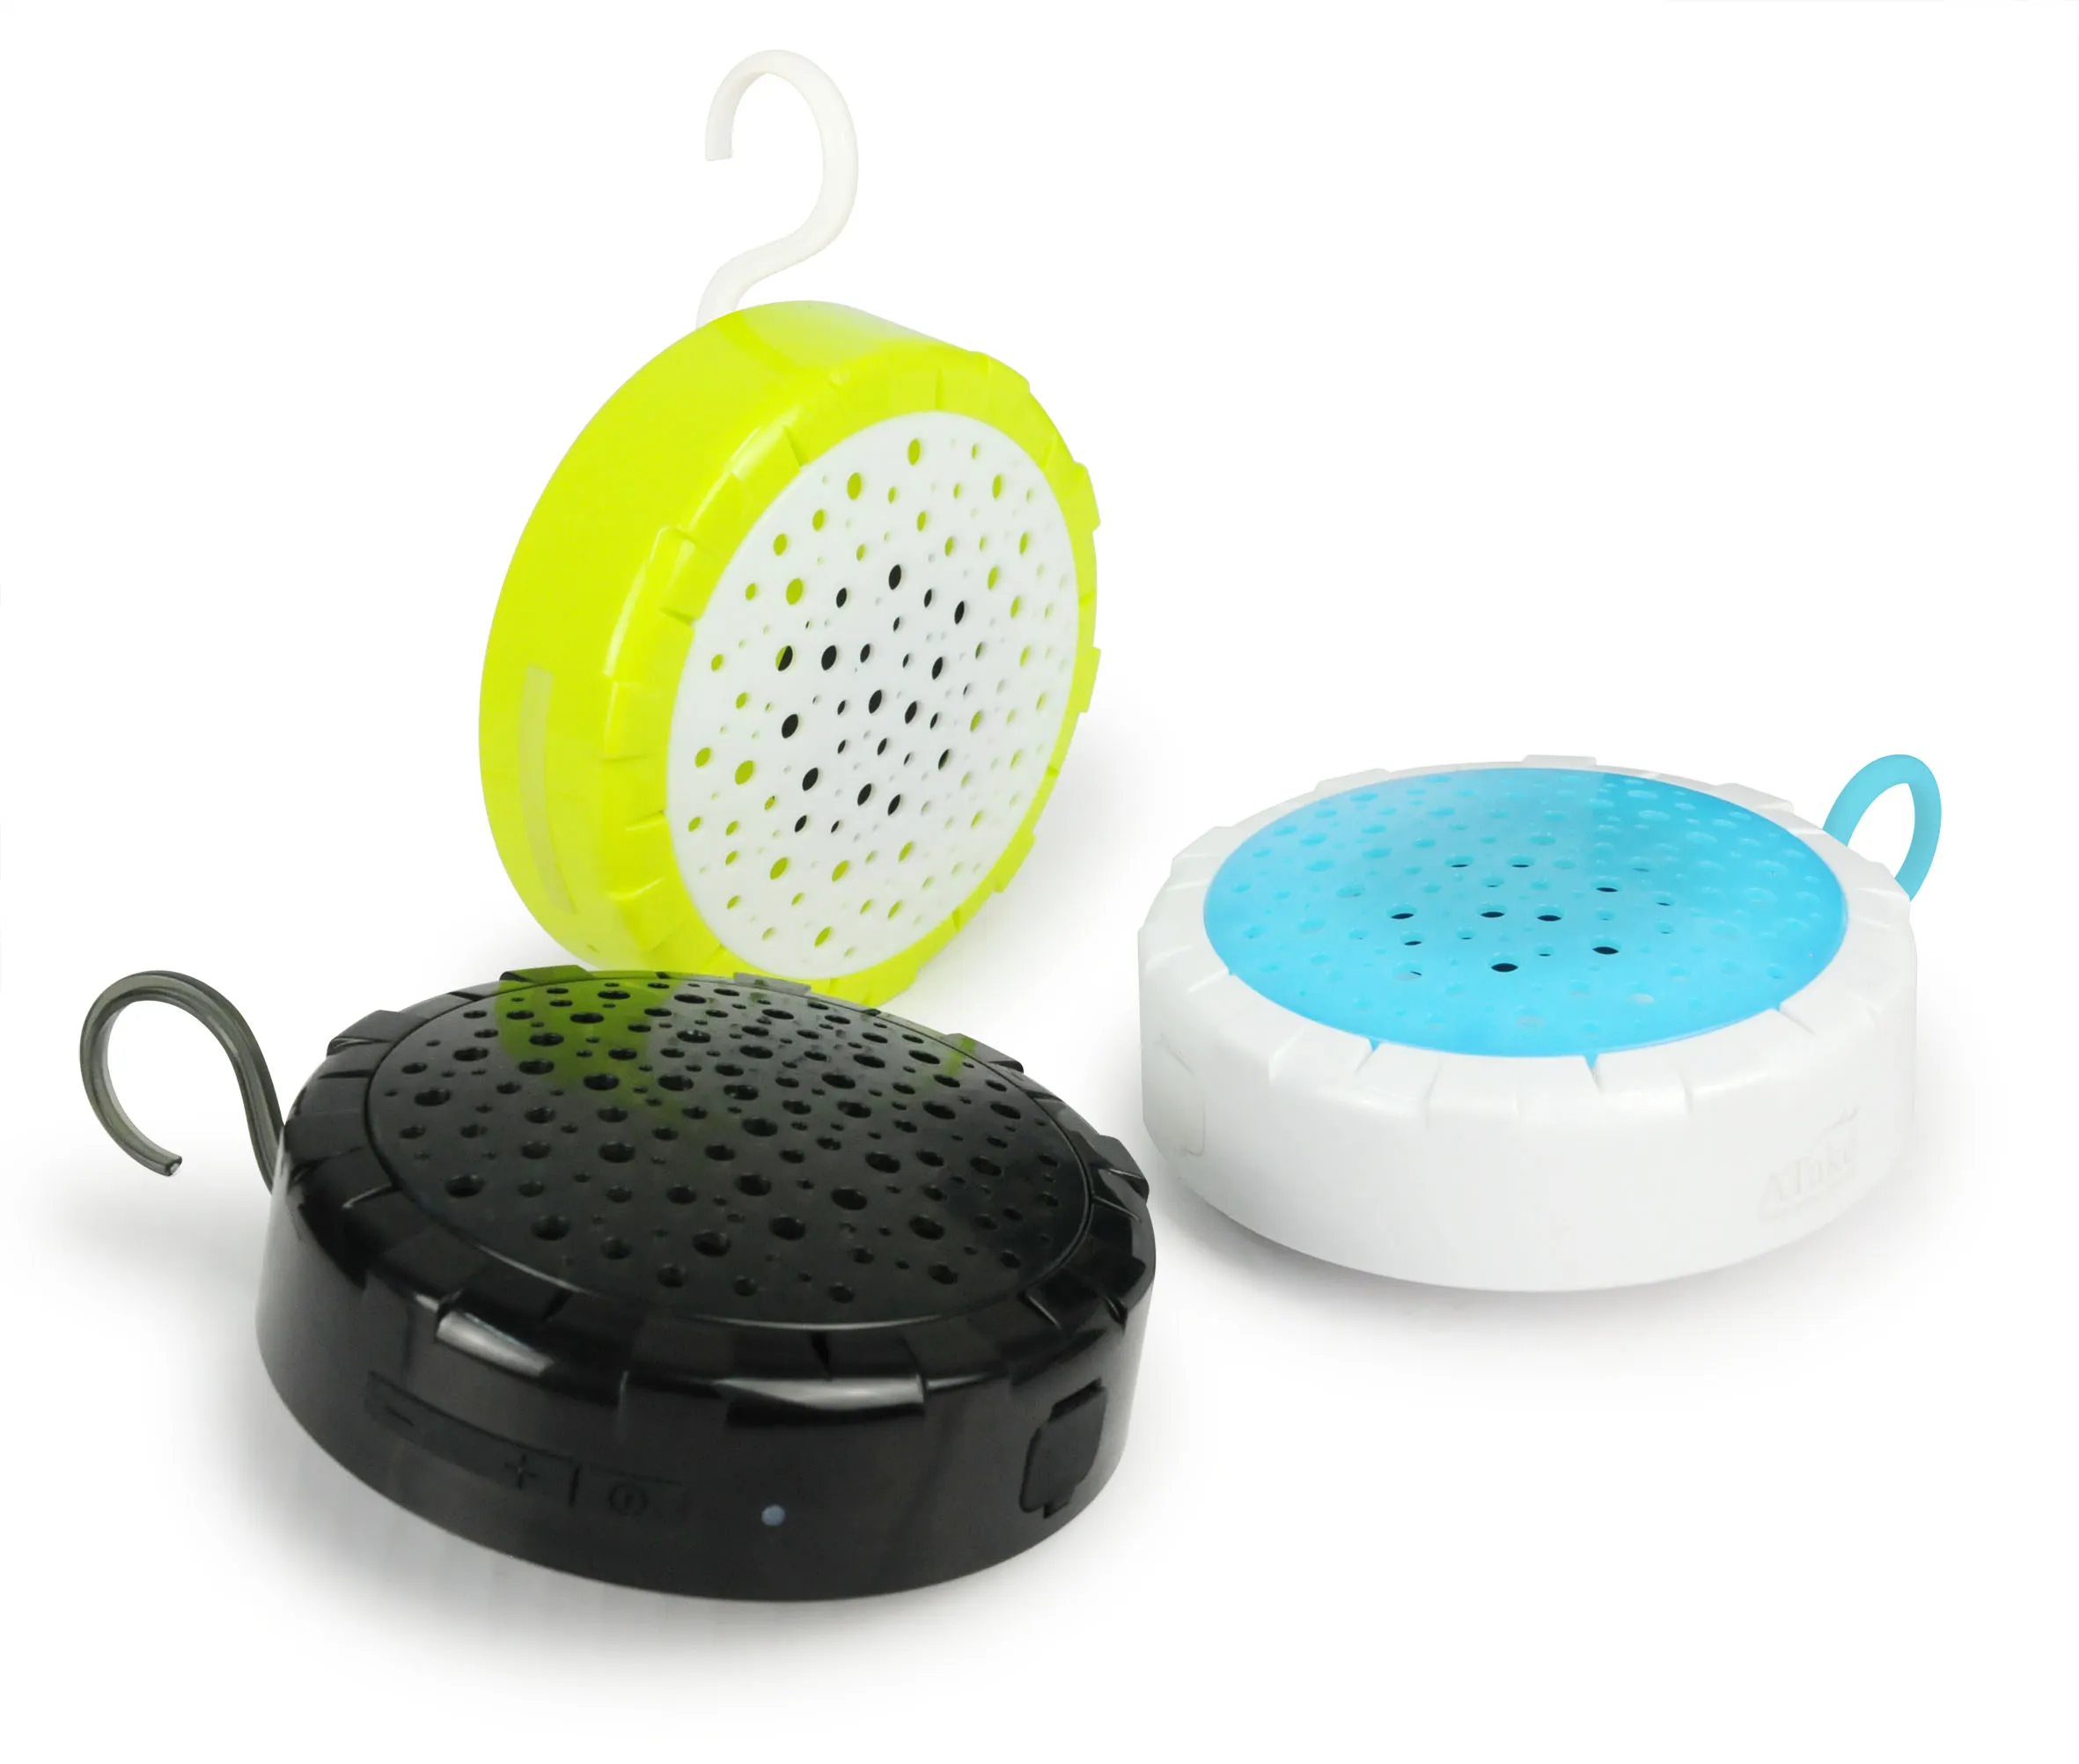 Atake wasserdichter IPX6 kabelloser Bluetooth-Lautsprecher für die Dusche mit Haken-Saugkappe, spritzwassergeschützter kabelloser Bluetooth-Subwoofer für die Dusche in der Dusche